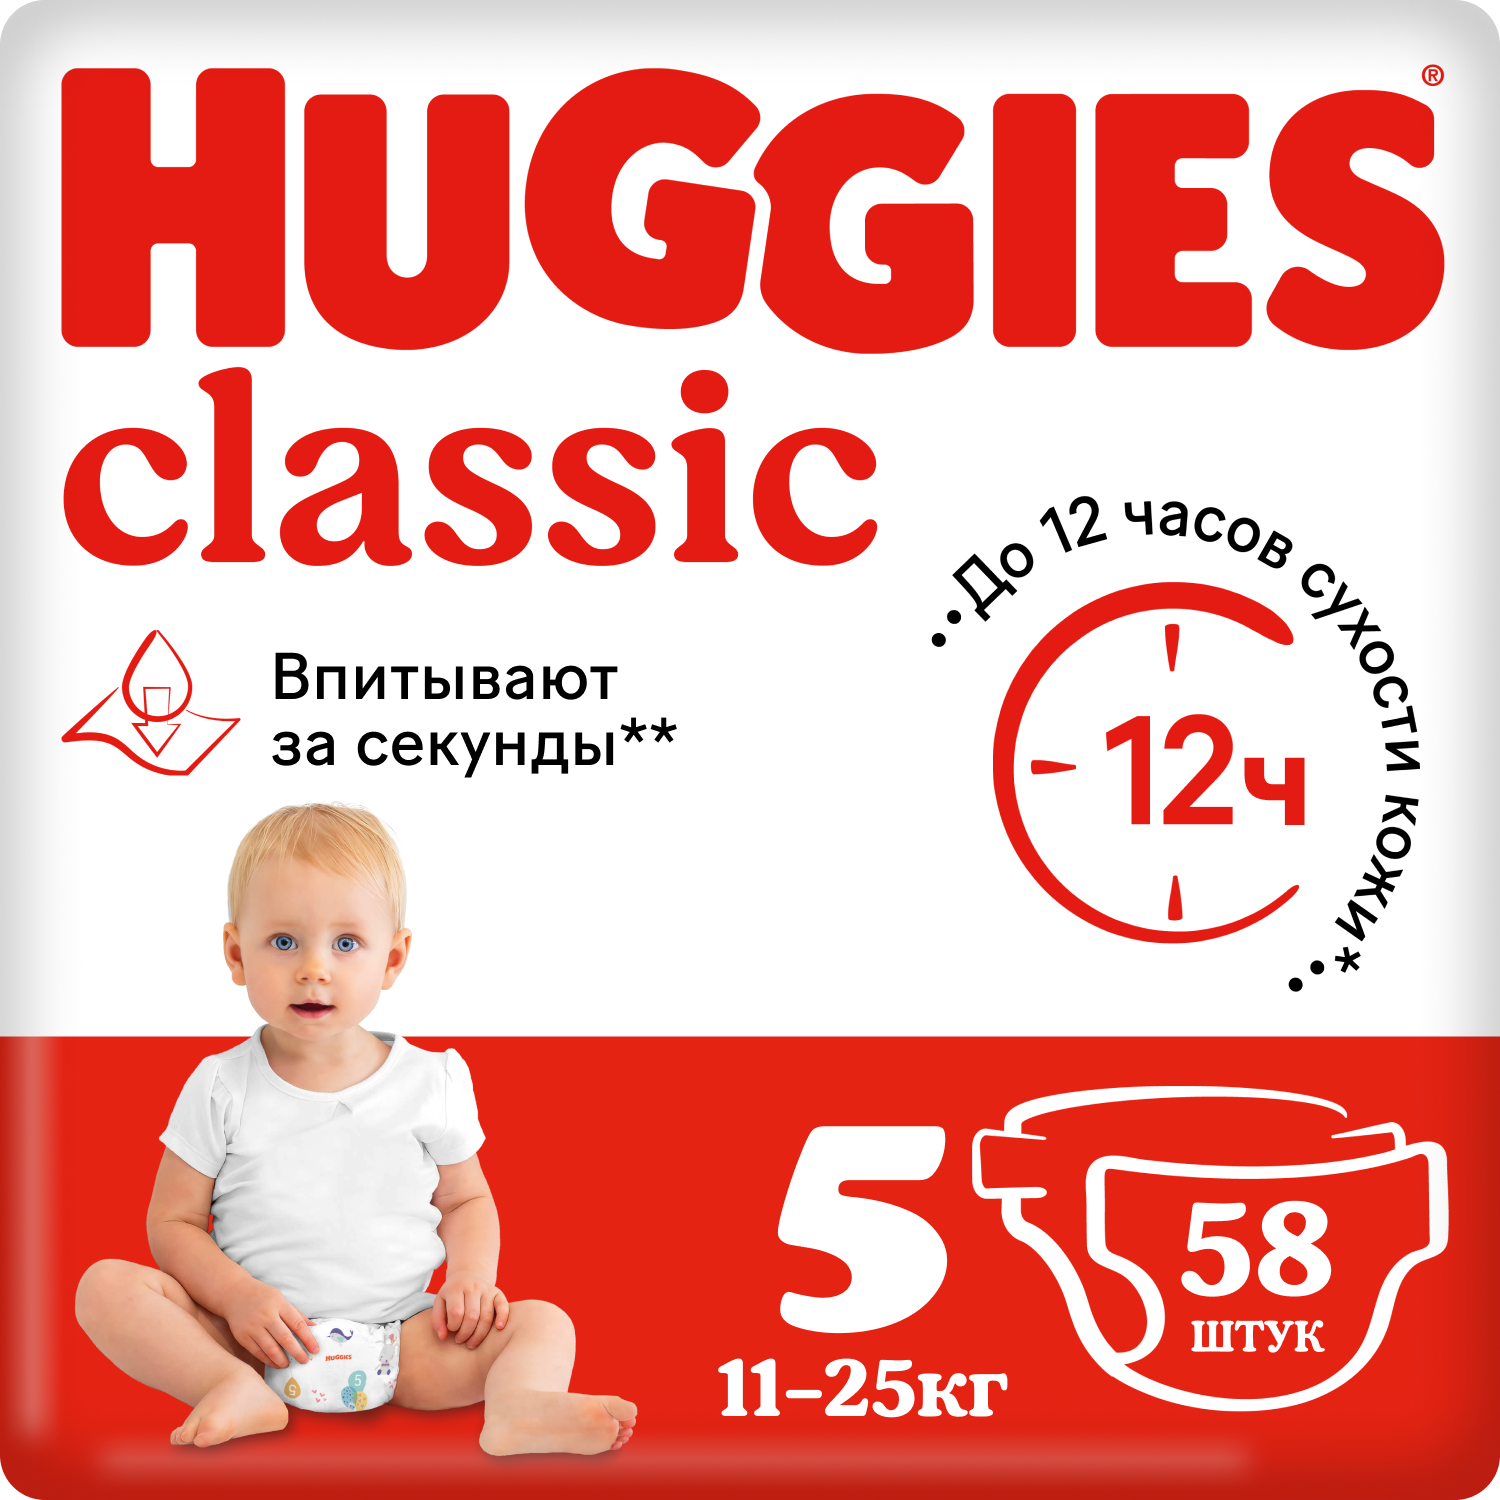 Подгузники Huggies Classic 5 (11-25 кг), 58 шт. подгузники huggies classic 4 7 18 кг 13 шт